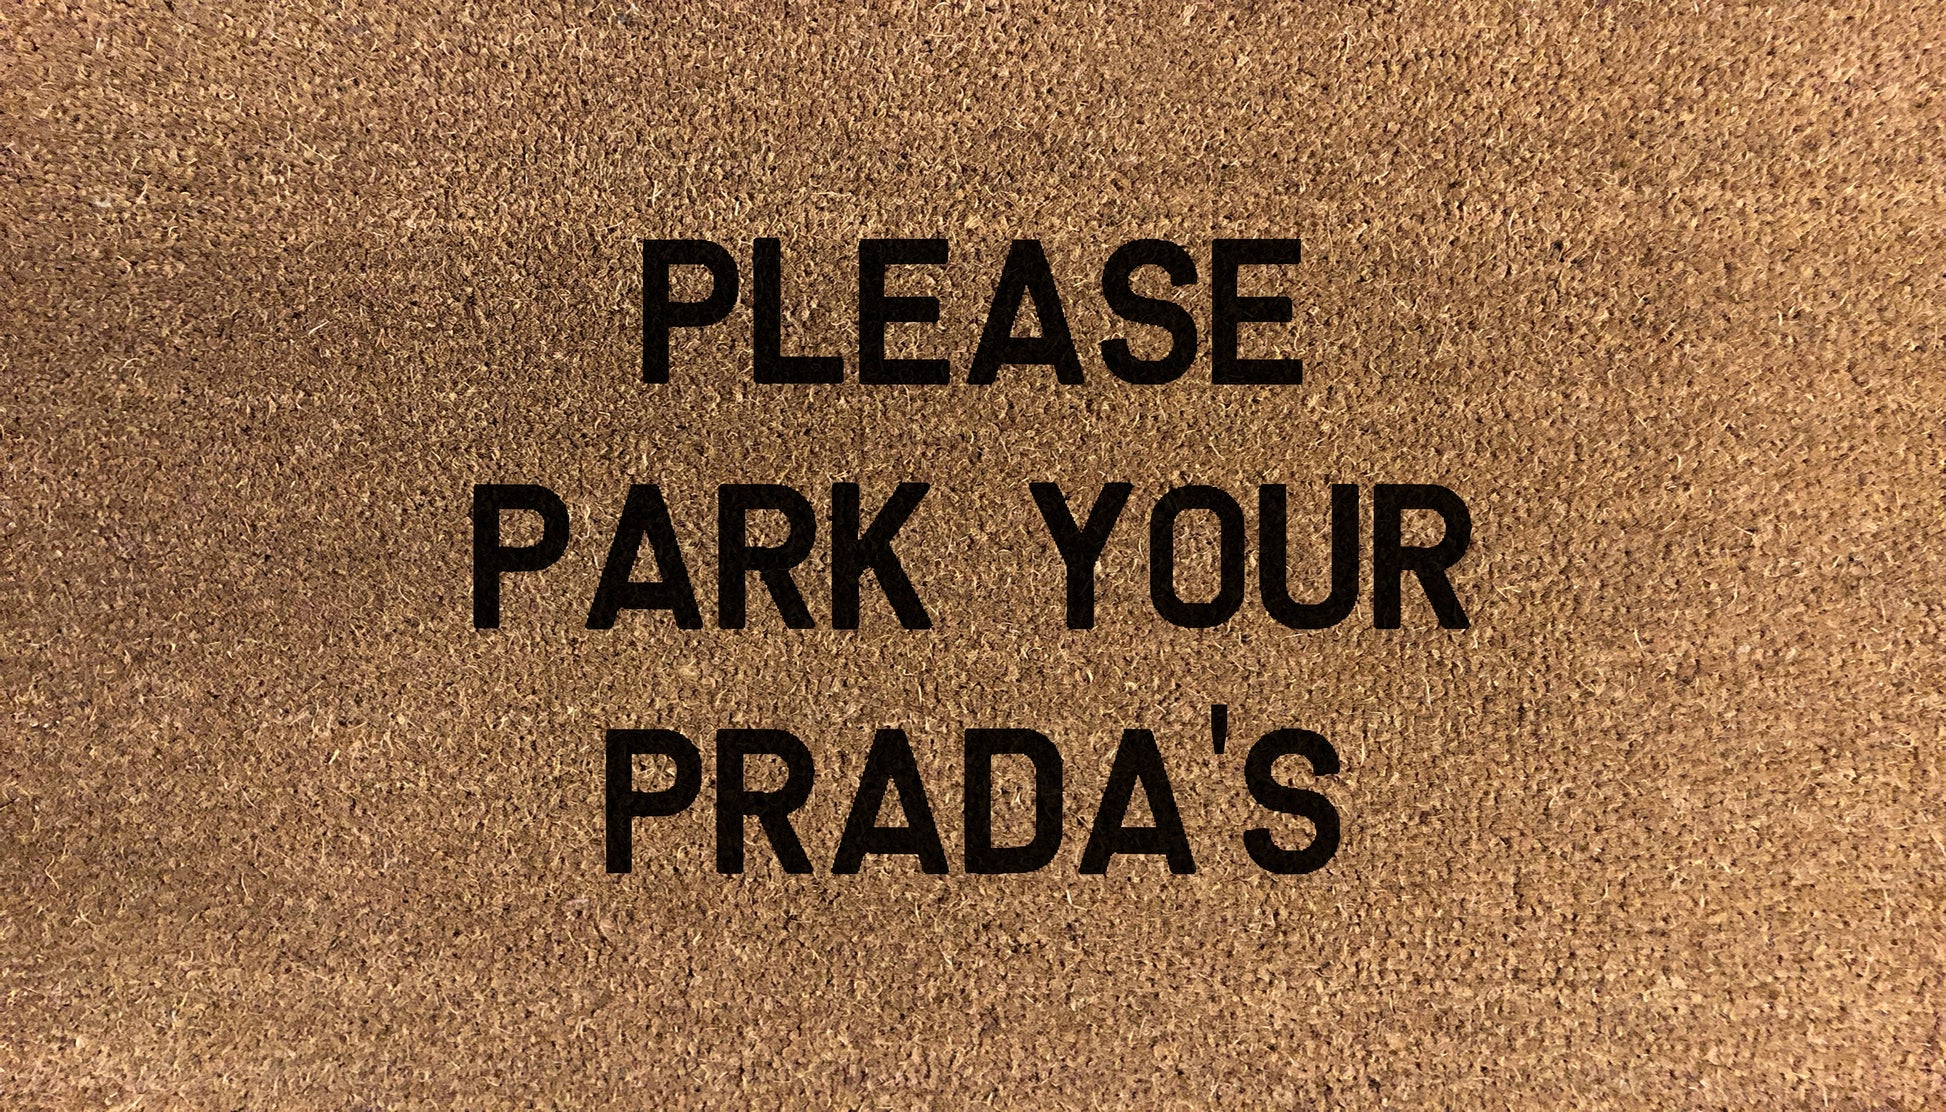 Please Remove Your Prada's - DoormatsOnline